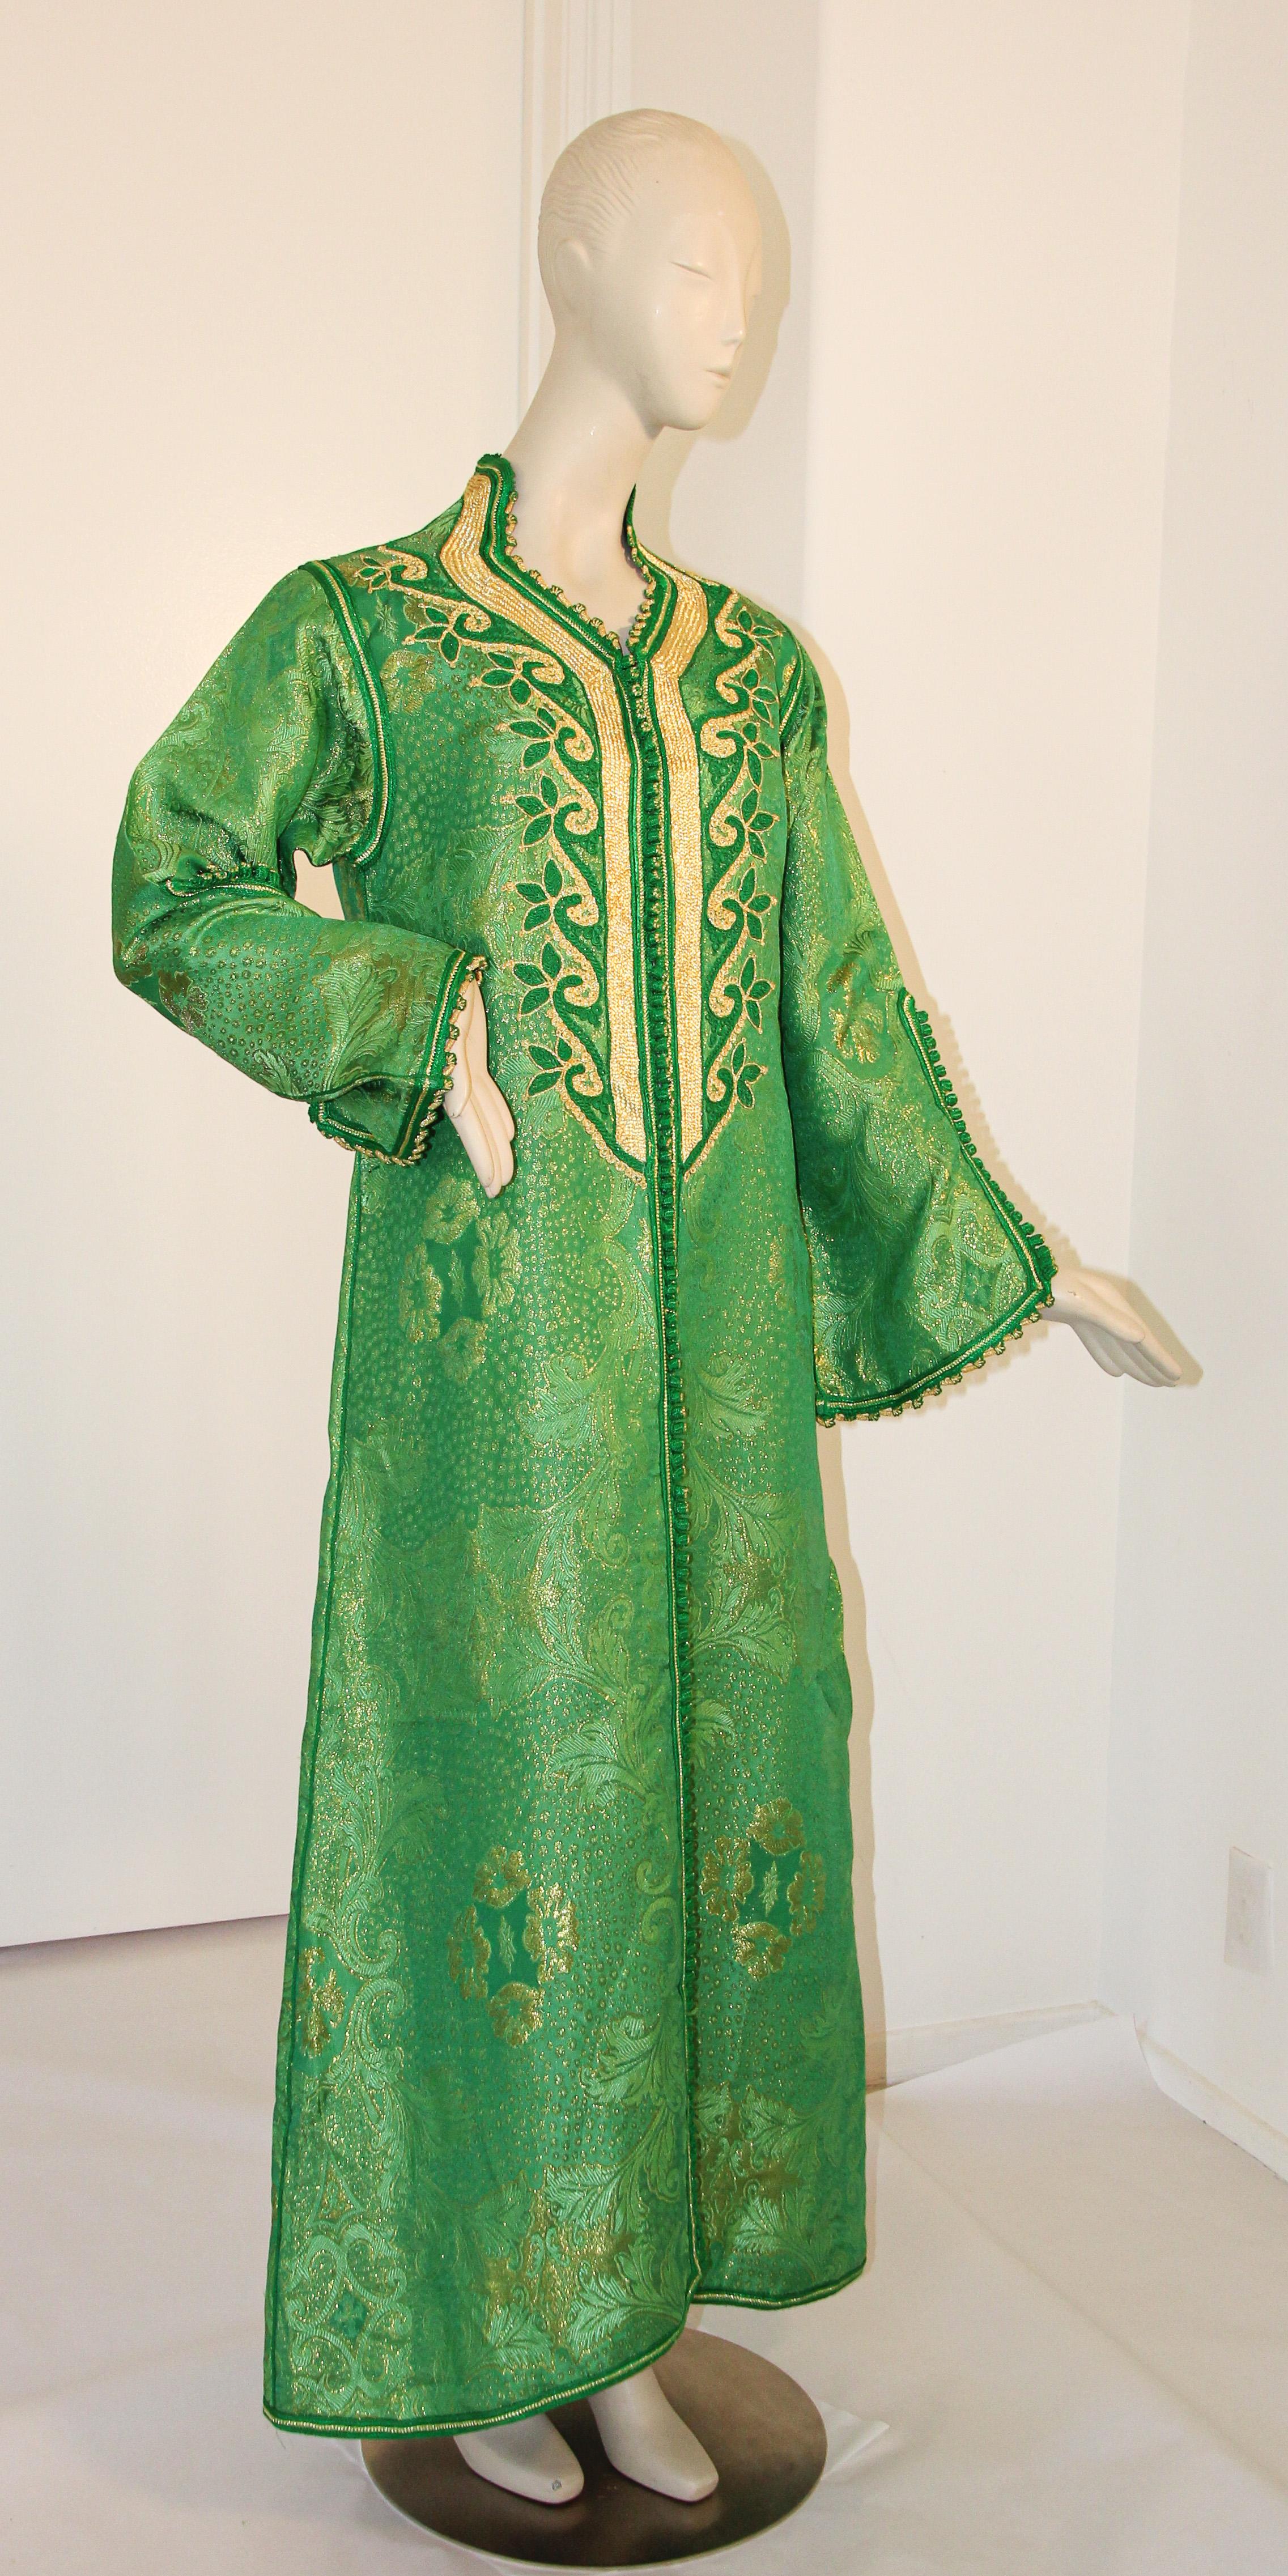 Elégant caftan marocain vert émeraude et brocart métallique à lames or,
Il s'agit d'un exemple exceptionnel de la mode marocaine,
Fabriqué à la main au Maroc et ajusté pour une coupe décontractée avec des manches larges, il est réalisé dans la